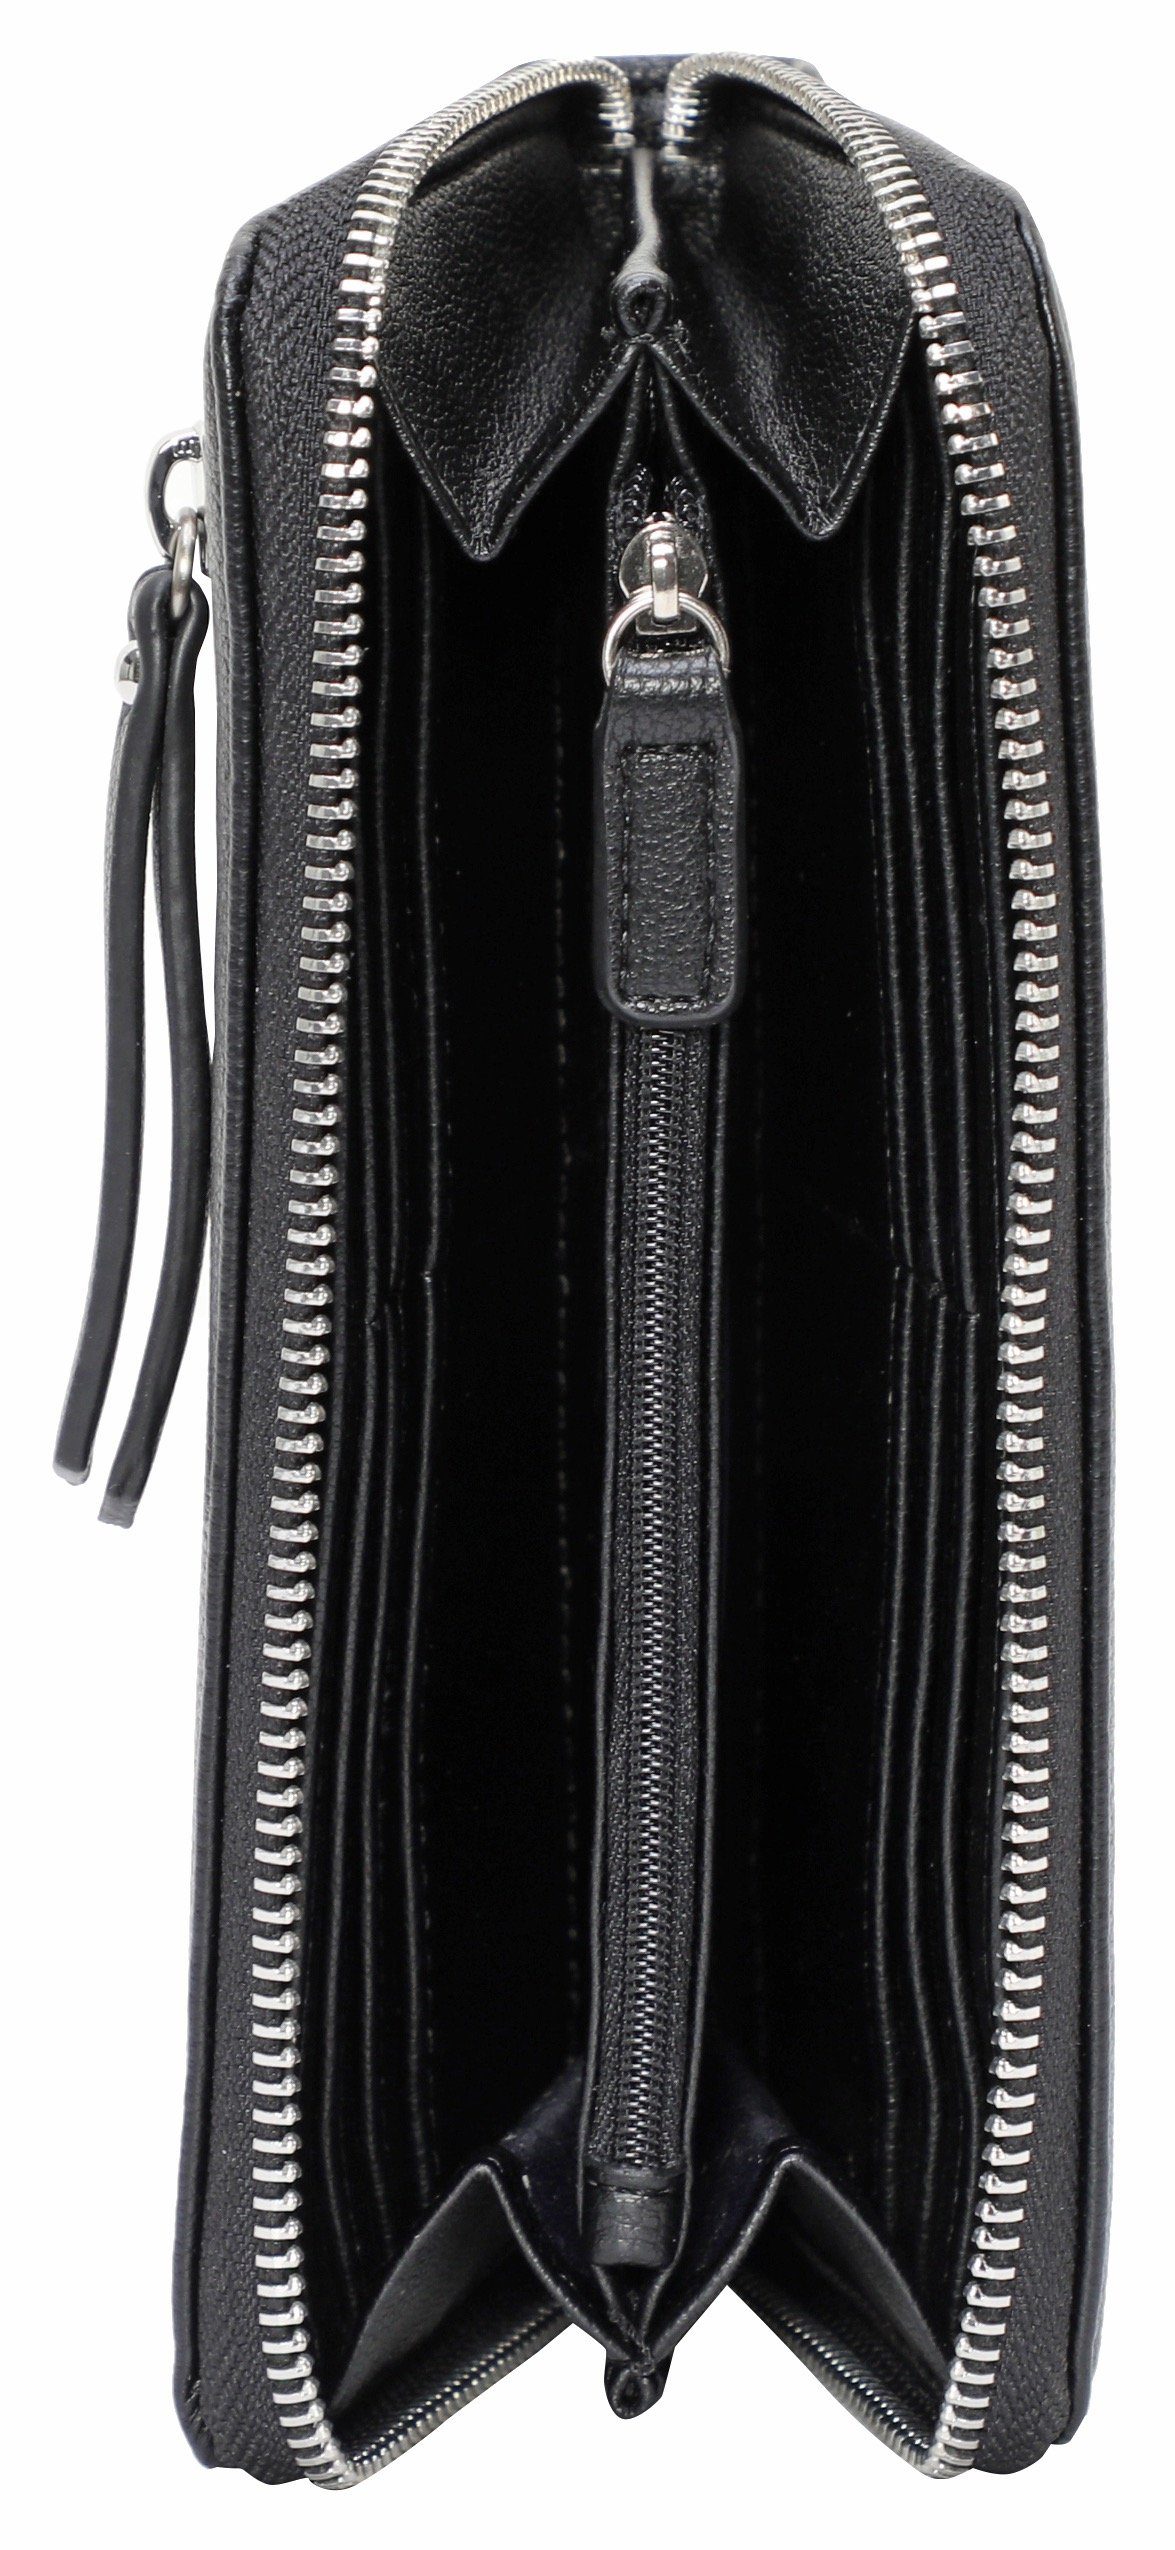 GERRY WEBER Bags use mit lh13z, purse black daily viel Stauraum Geldbörse